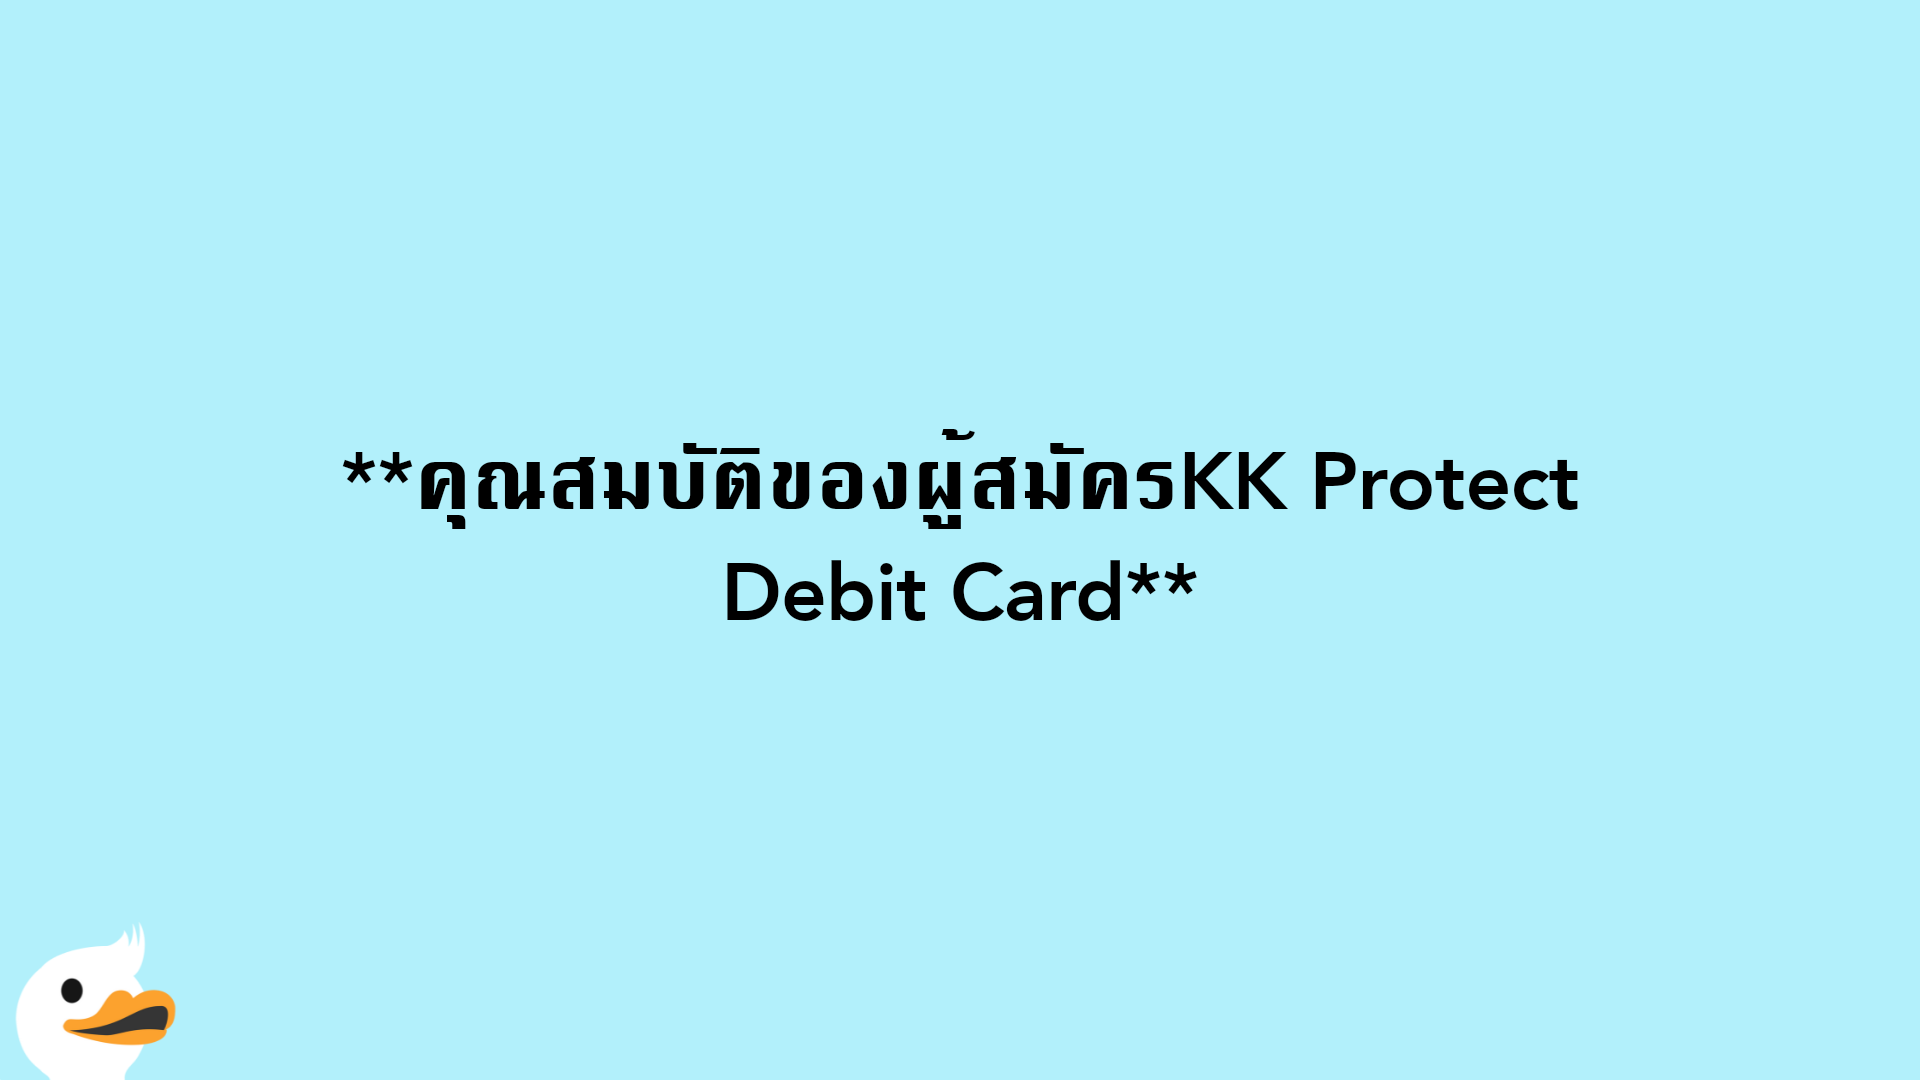 คุณสมบัติของผู้สมัครKK Protect Debit Card